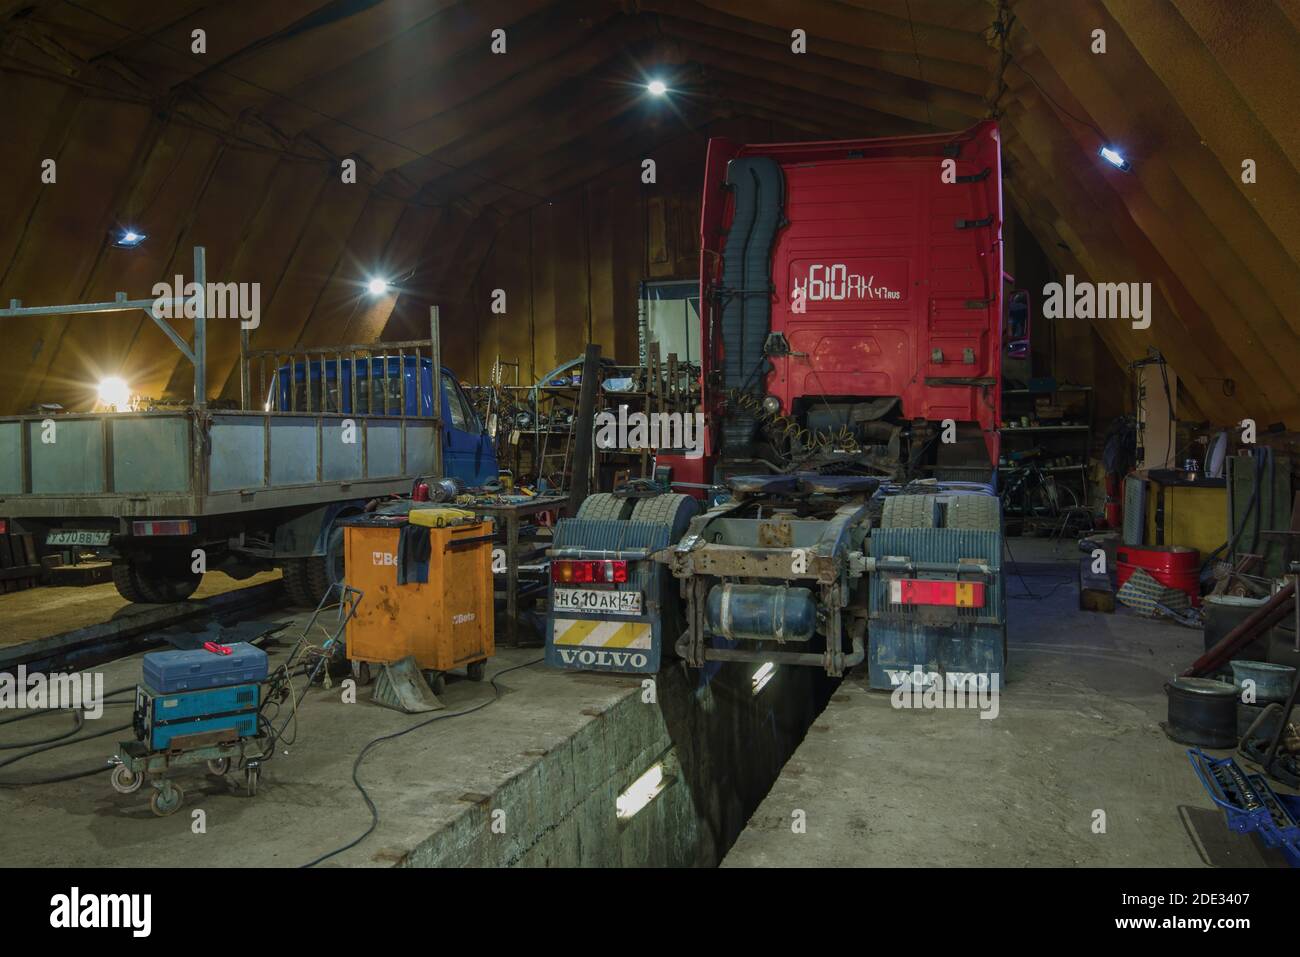 SAN PIETROBURGO, RUSSIA - 04 AGOSTO 2020: Interno di un piccolo servizio di camion auto Foto Stock